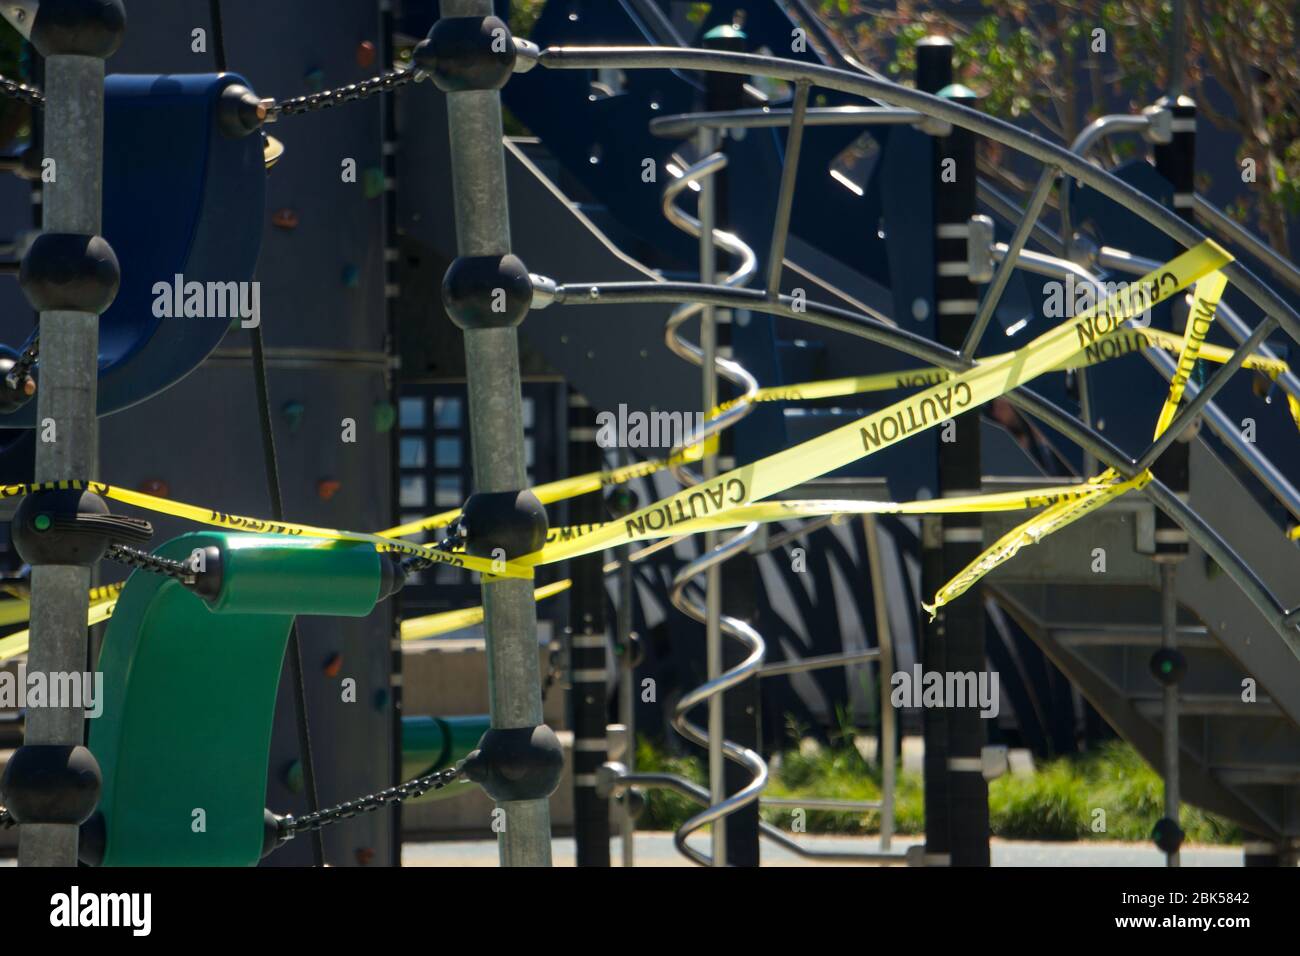 Geschlossener Stadtpark und abseits der Grenzen Spielplatz mit gelbem Klebeband wegen Coronavirus COVID19 Ausbruch bedeckt. Doyle Hollis Park, Emervyille, CA. Stockfoto